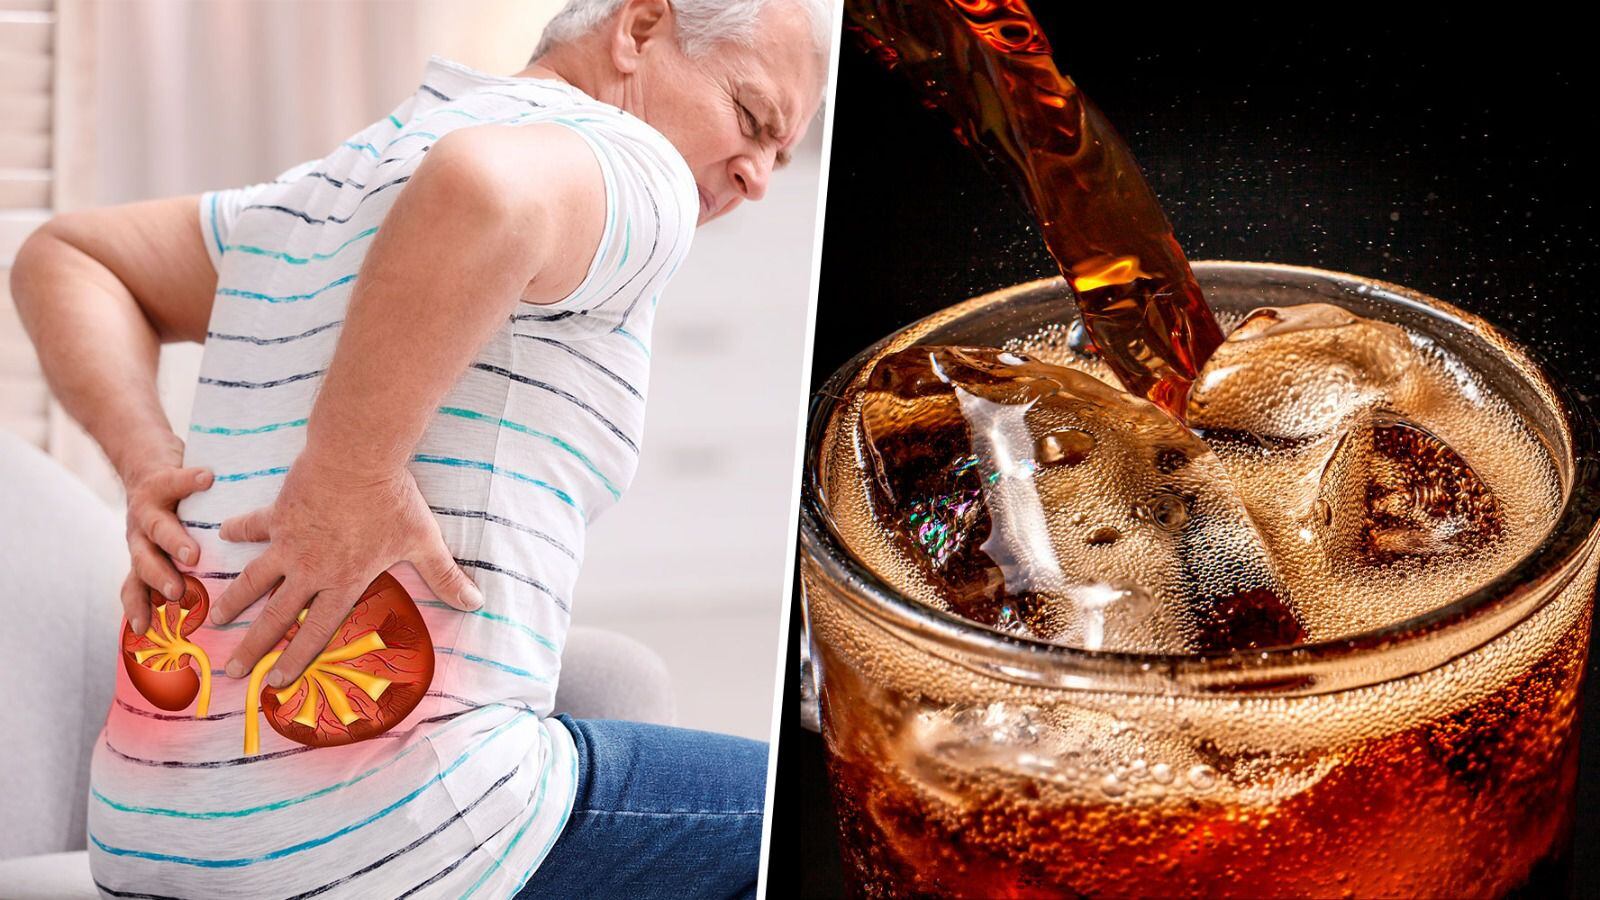 El refresco de cola es una de las bebidas que más daño hace a la salud de los riñones. (Fotos: Shutterstock).